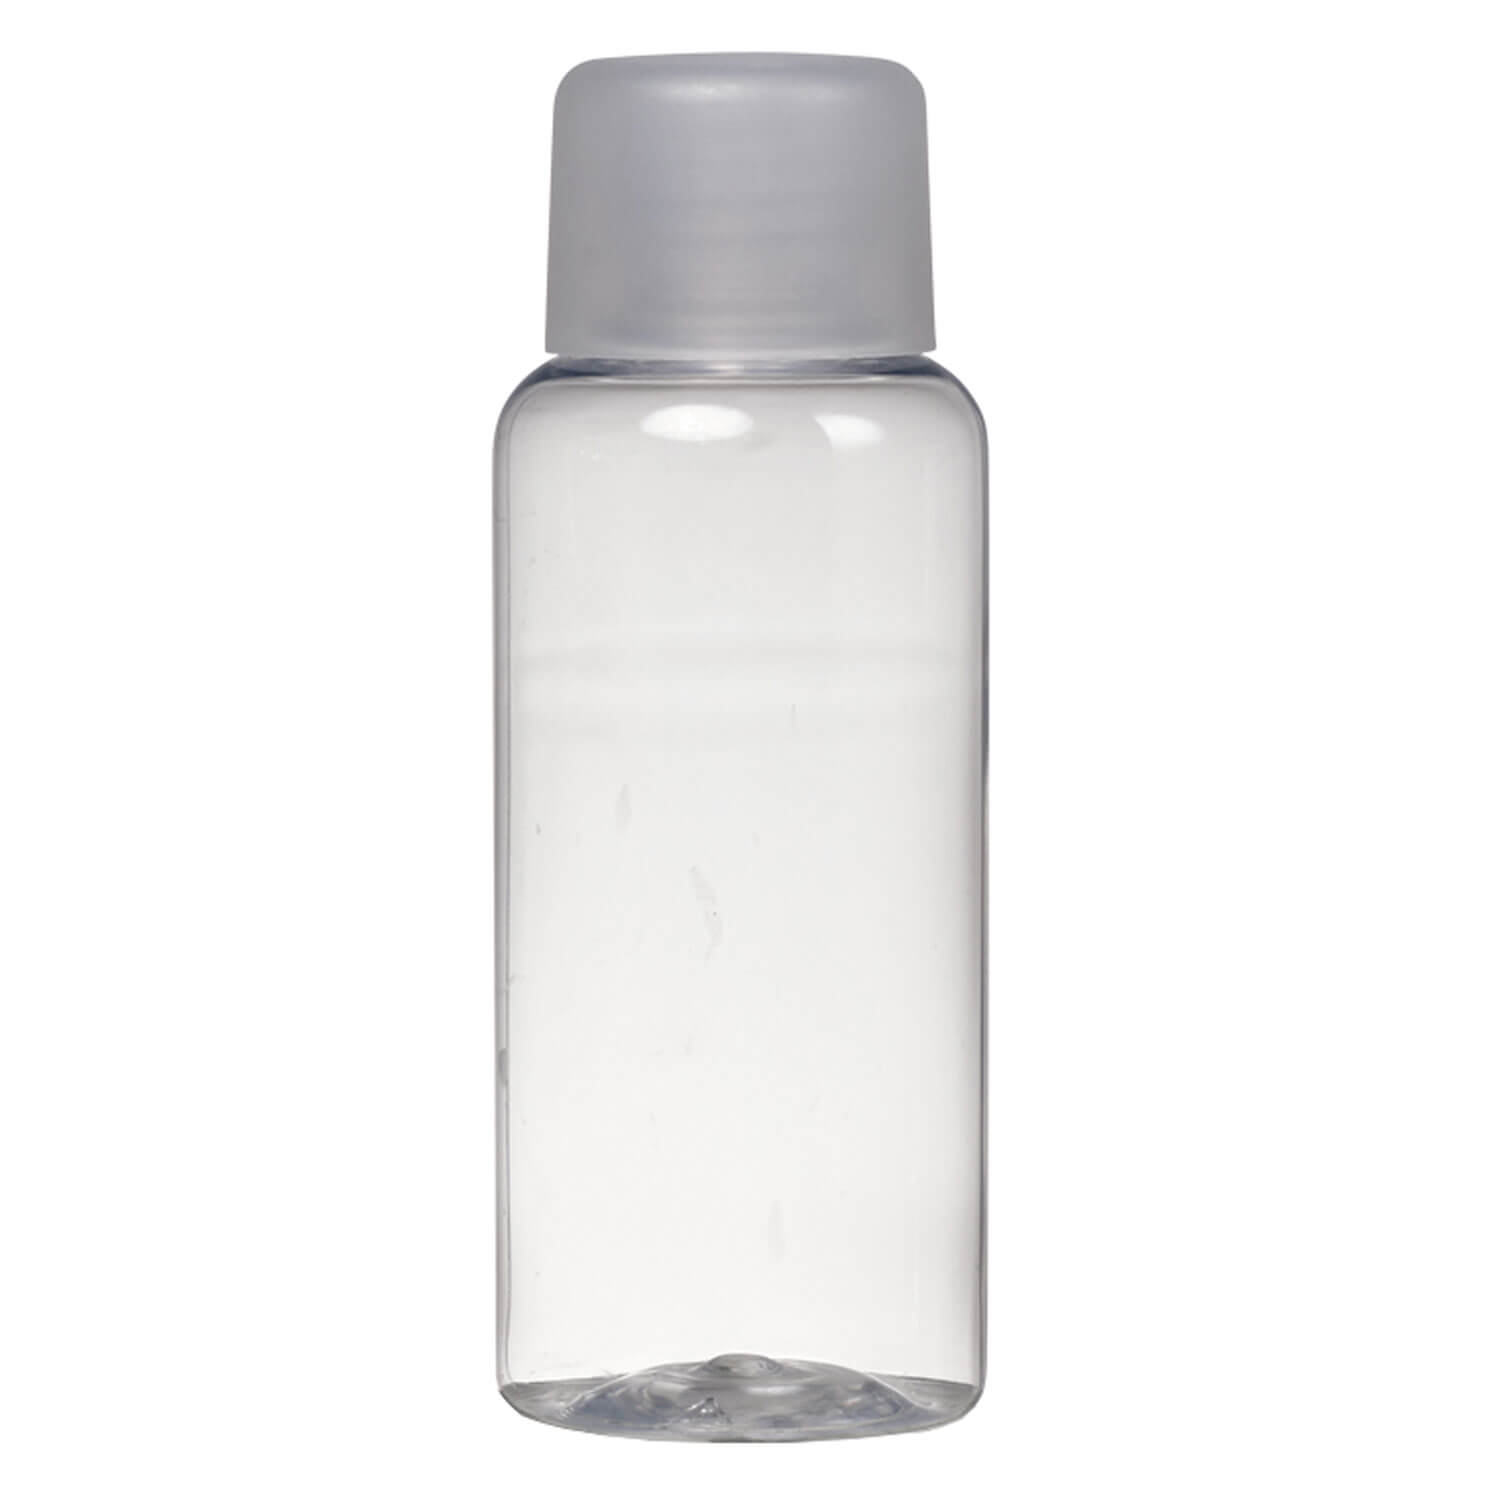 Produktbild von TRISA Travel - Lotionsflasche Gross